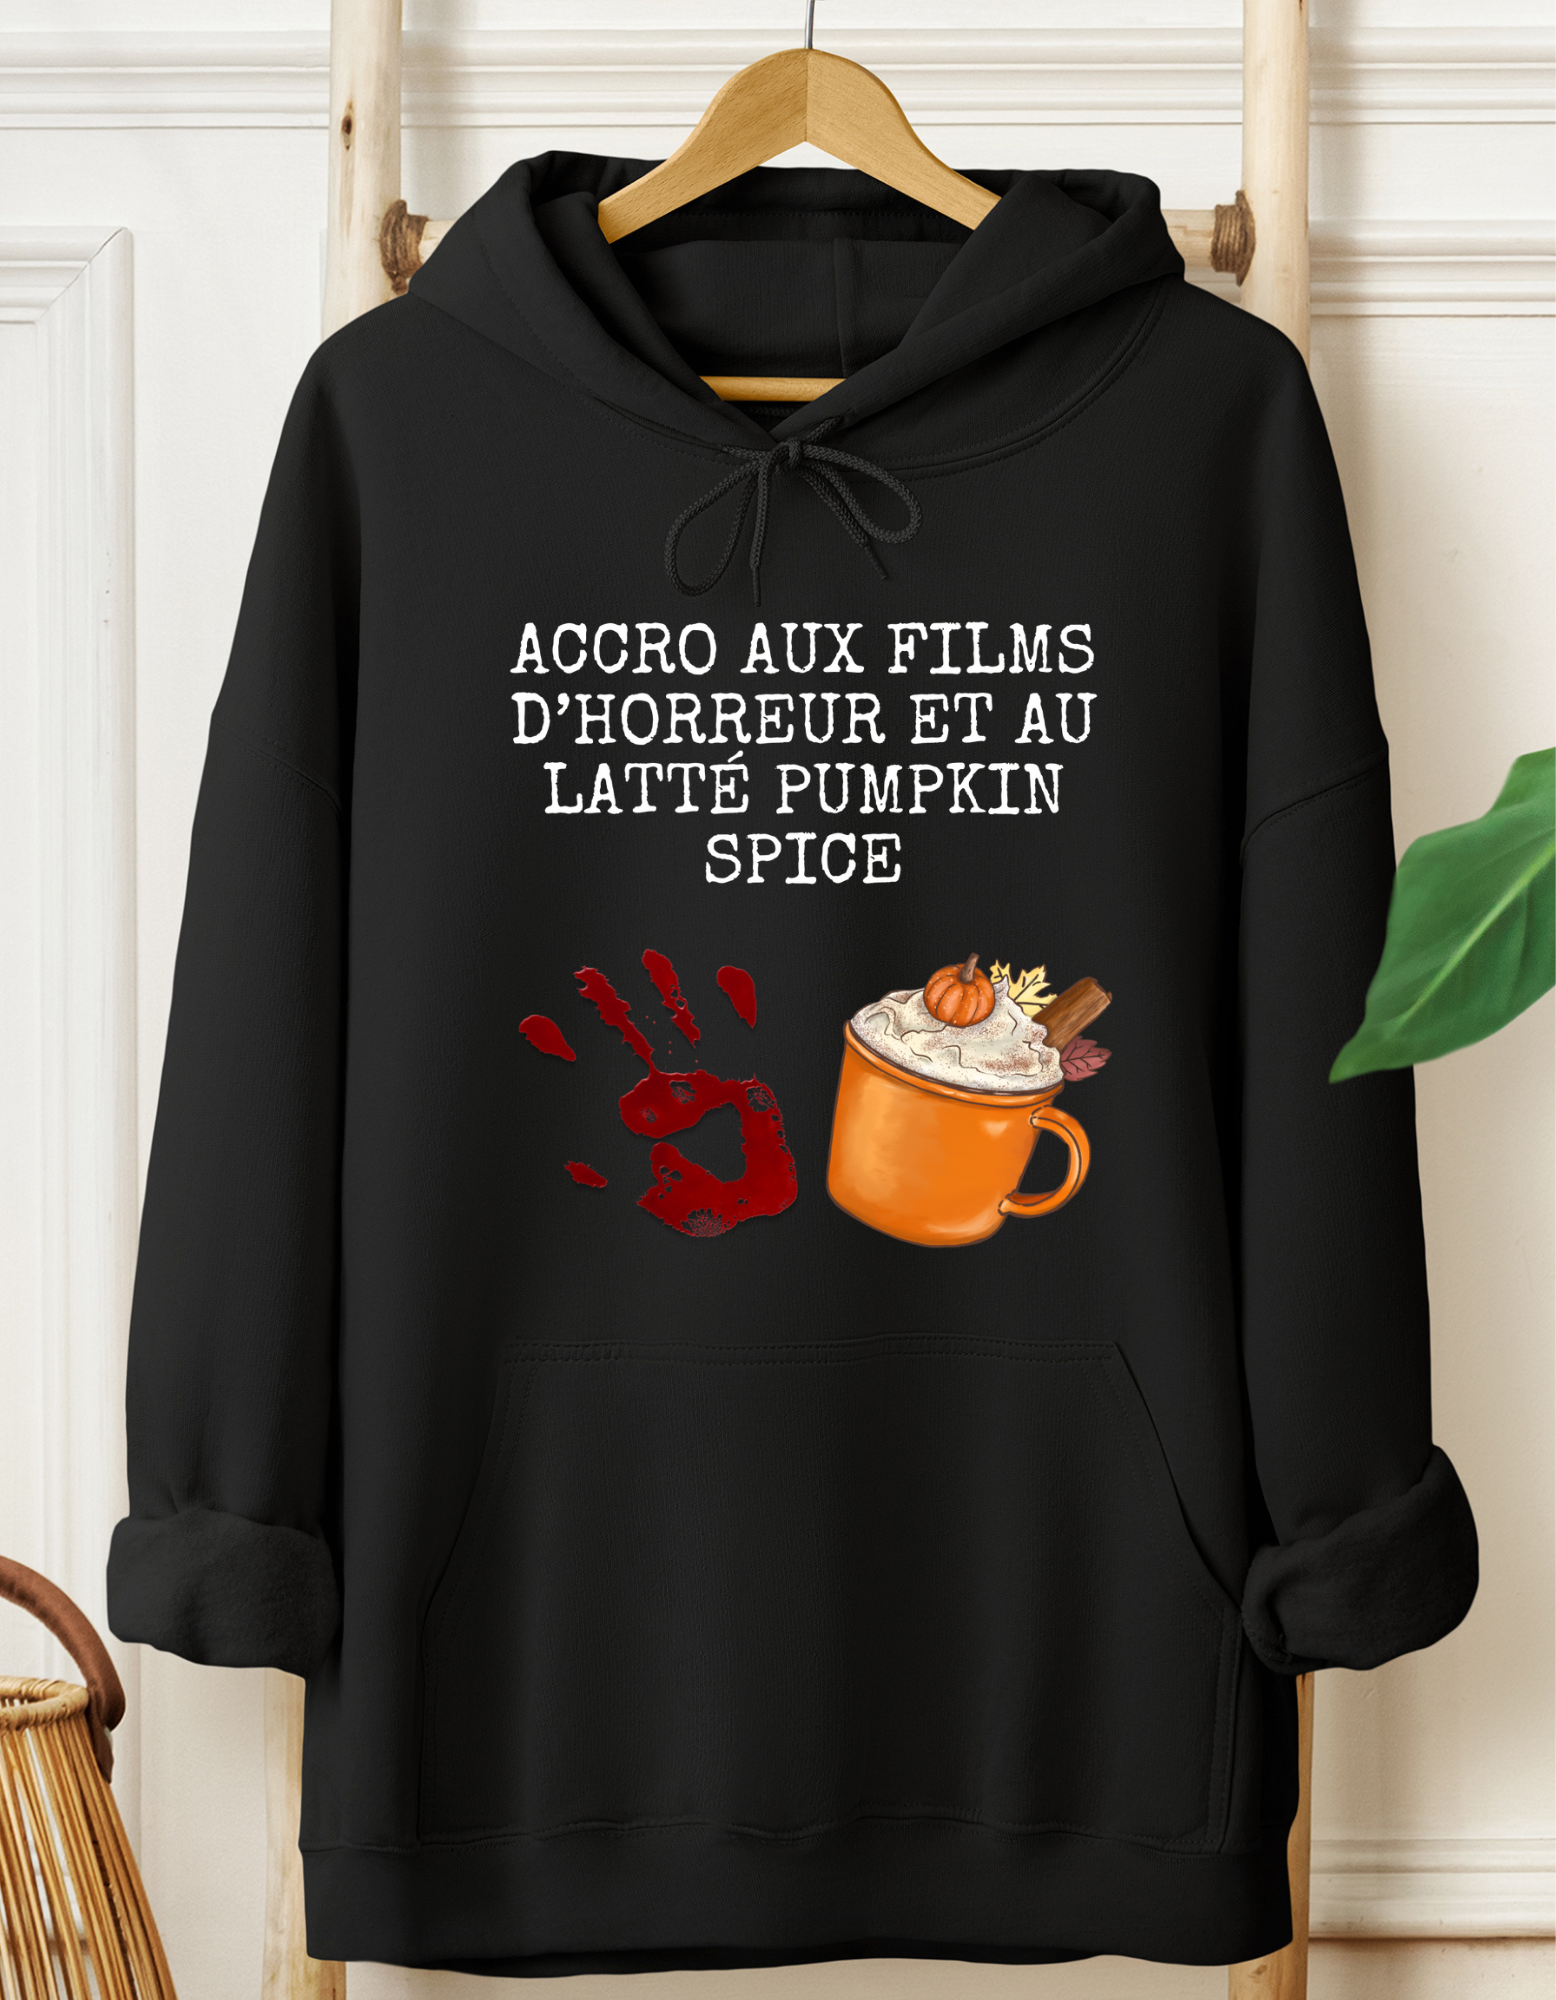 Kangourou - Accro aux films d'horreur et au latté pumpkin spice